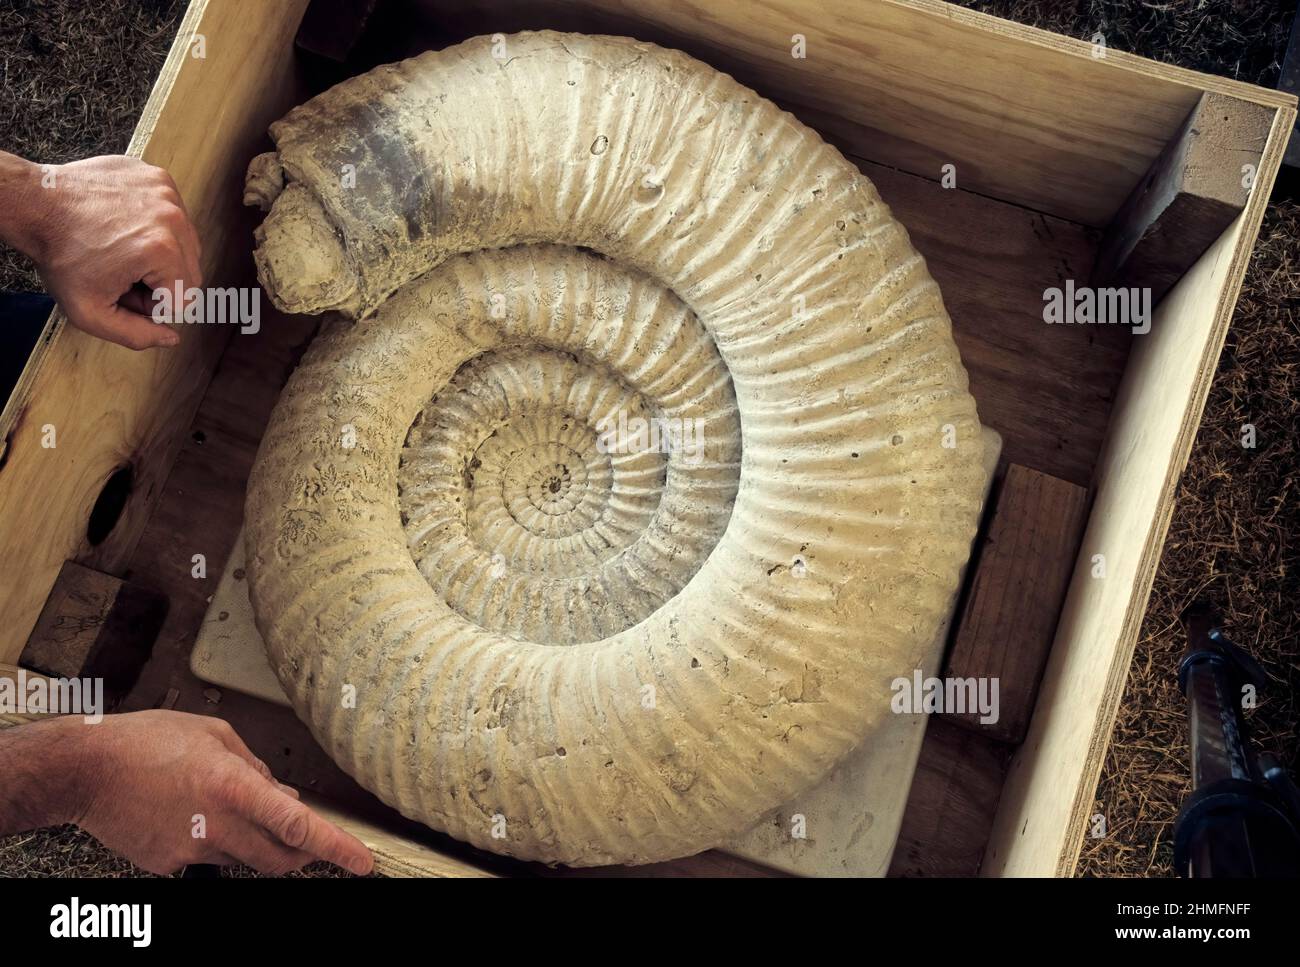 Ammonita gigante fossile vendita attende al Tucson Gem e Mineral Show Foto Stock